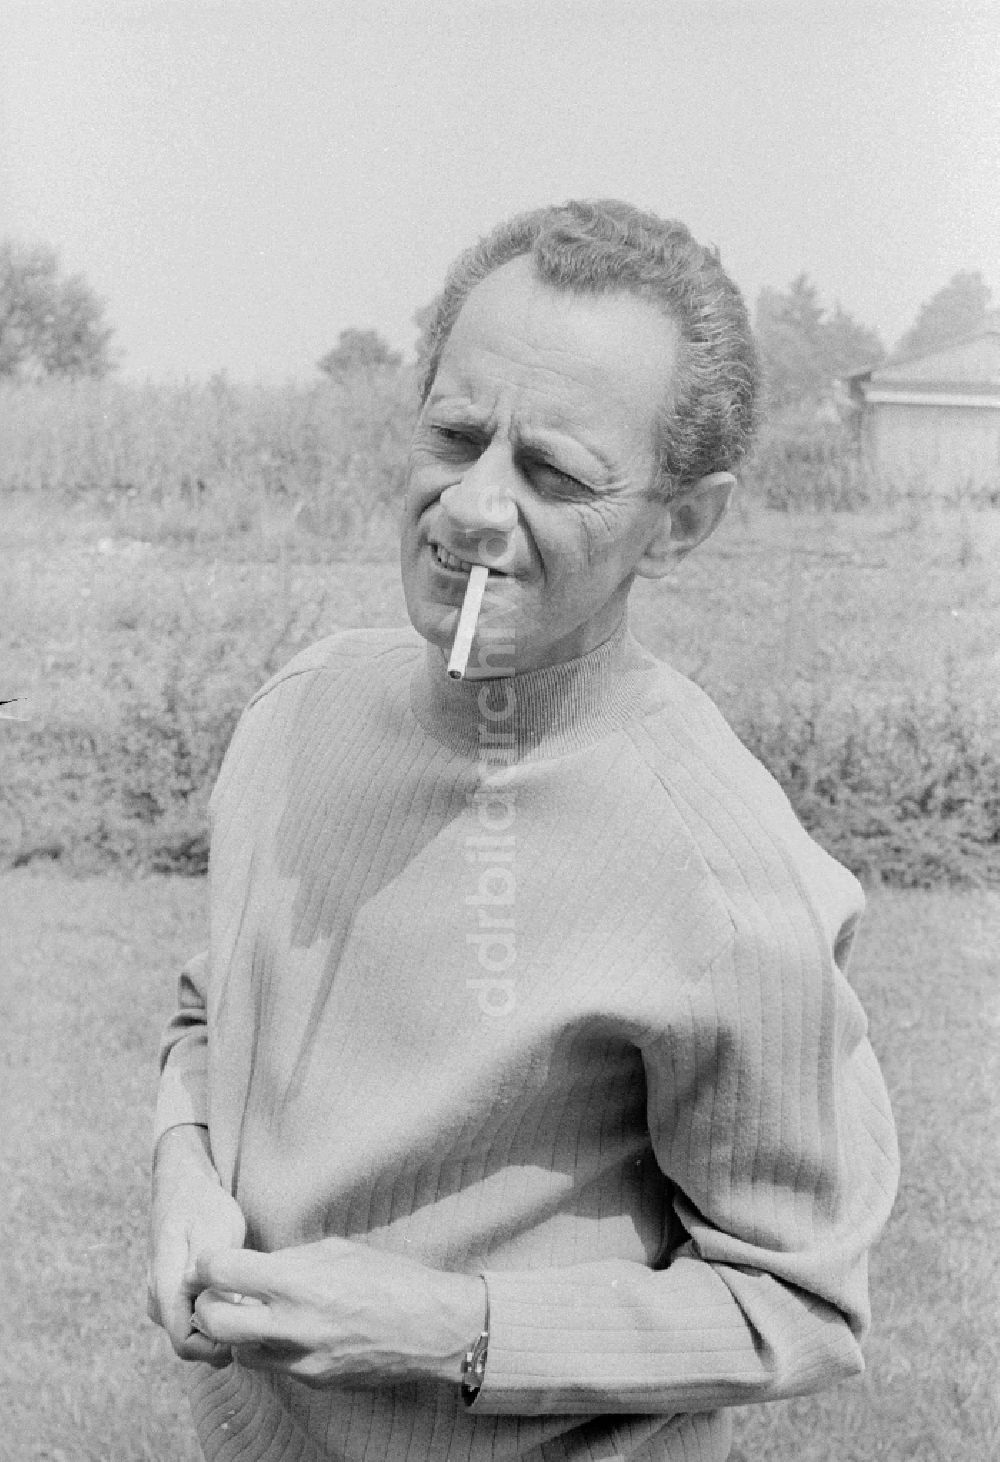 DDR-Bildarchiv: Zeuthen - Schriftsteller Dieter Noll (1927 - 2008) in Zeuthen in Brandenburg in der DDR